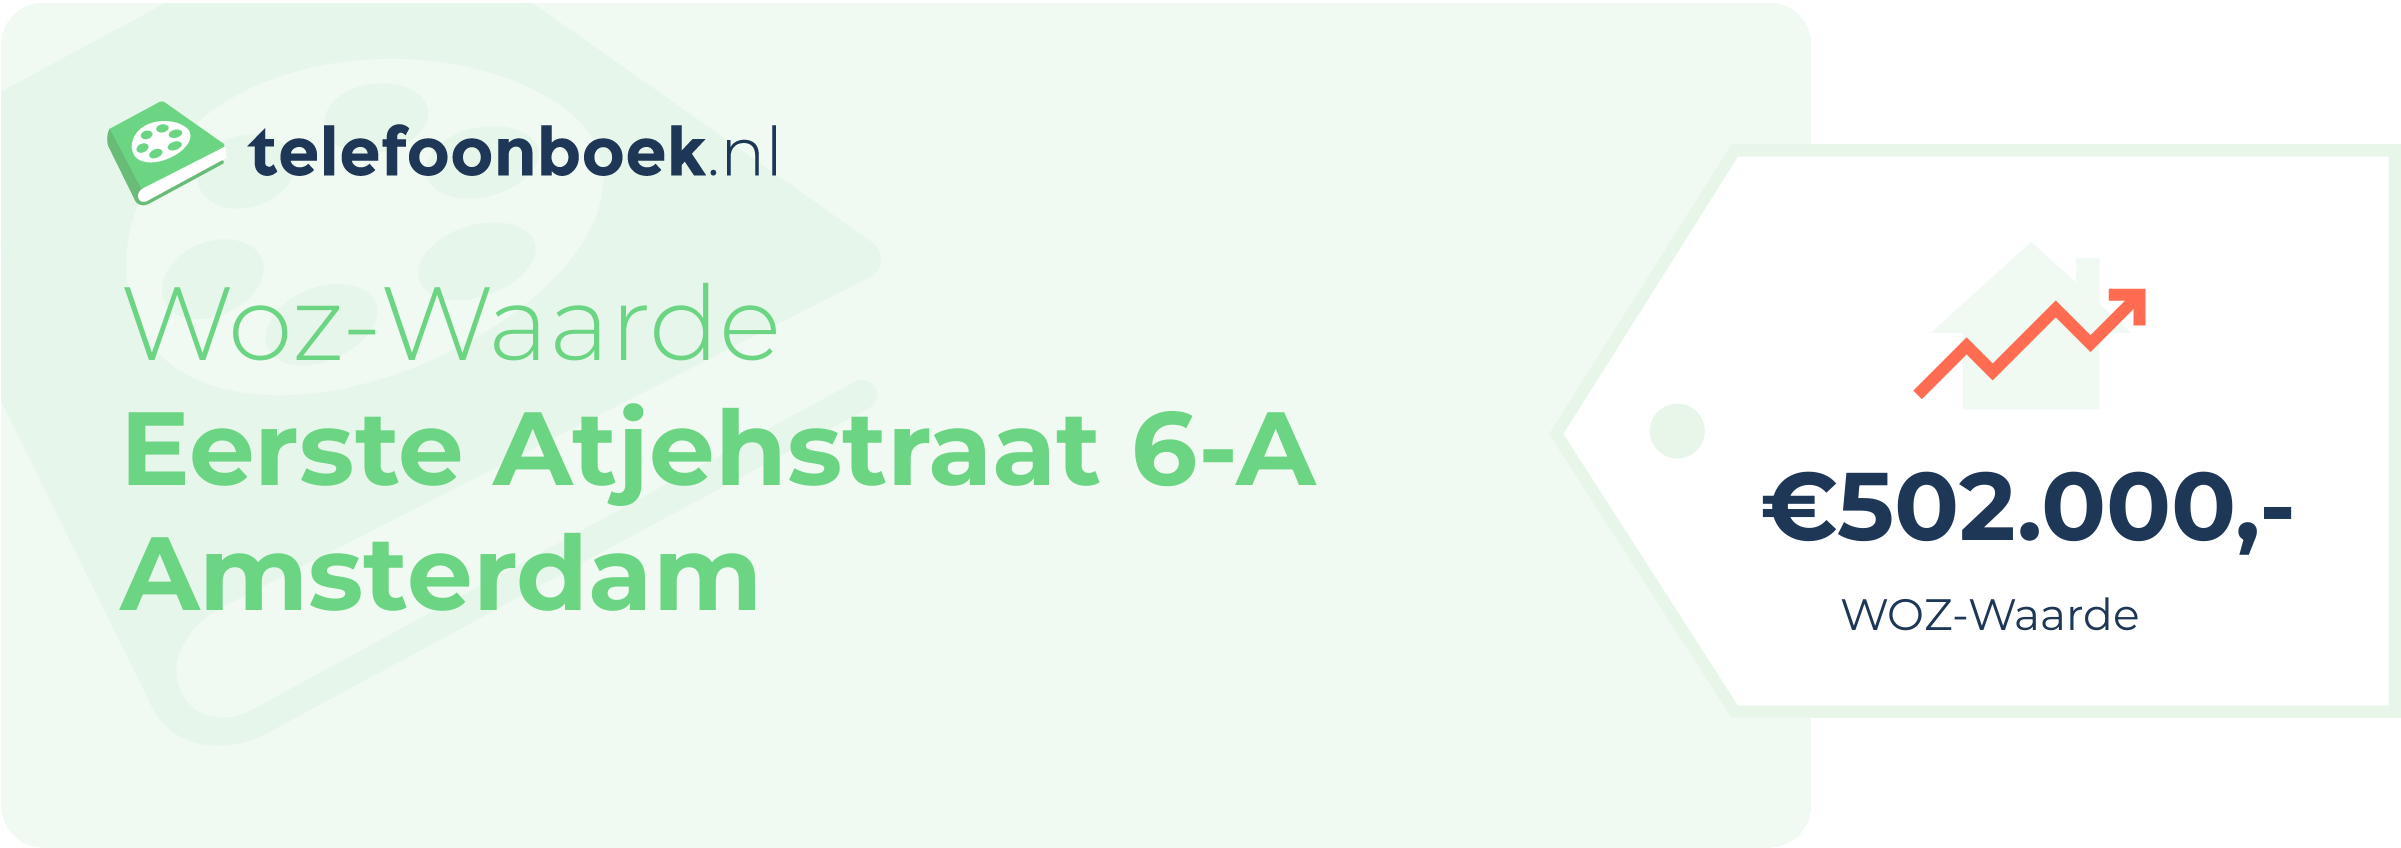 WOZ-waarde Eerste Atjehstraat 6-A Amsterdam